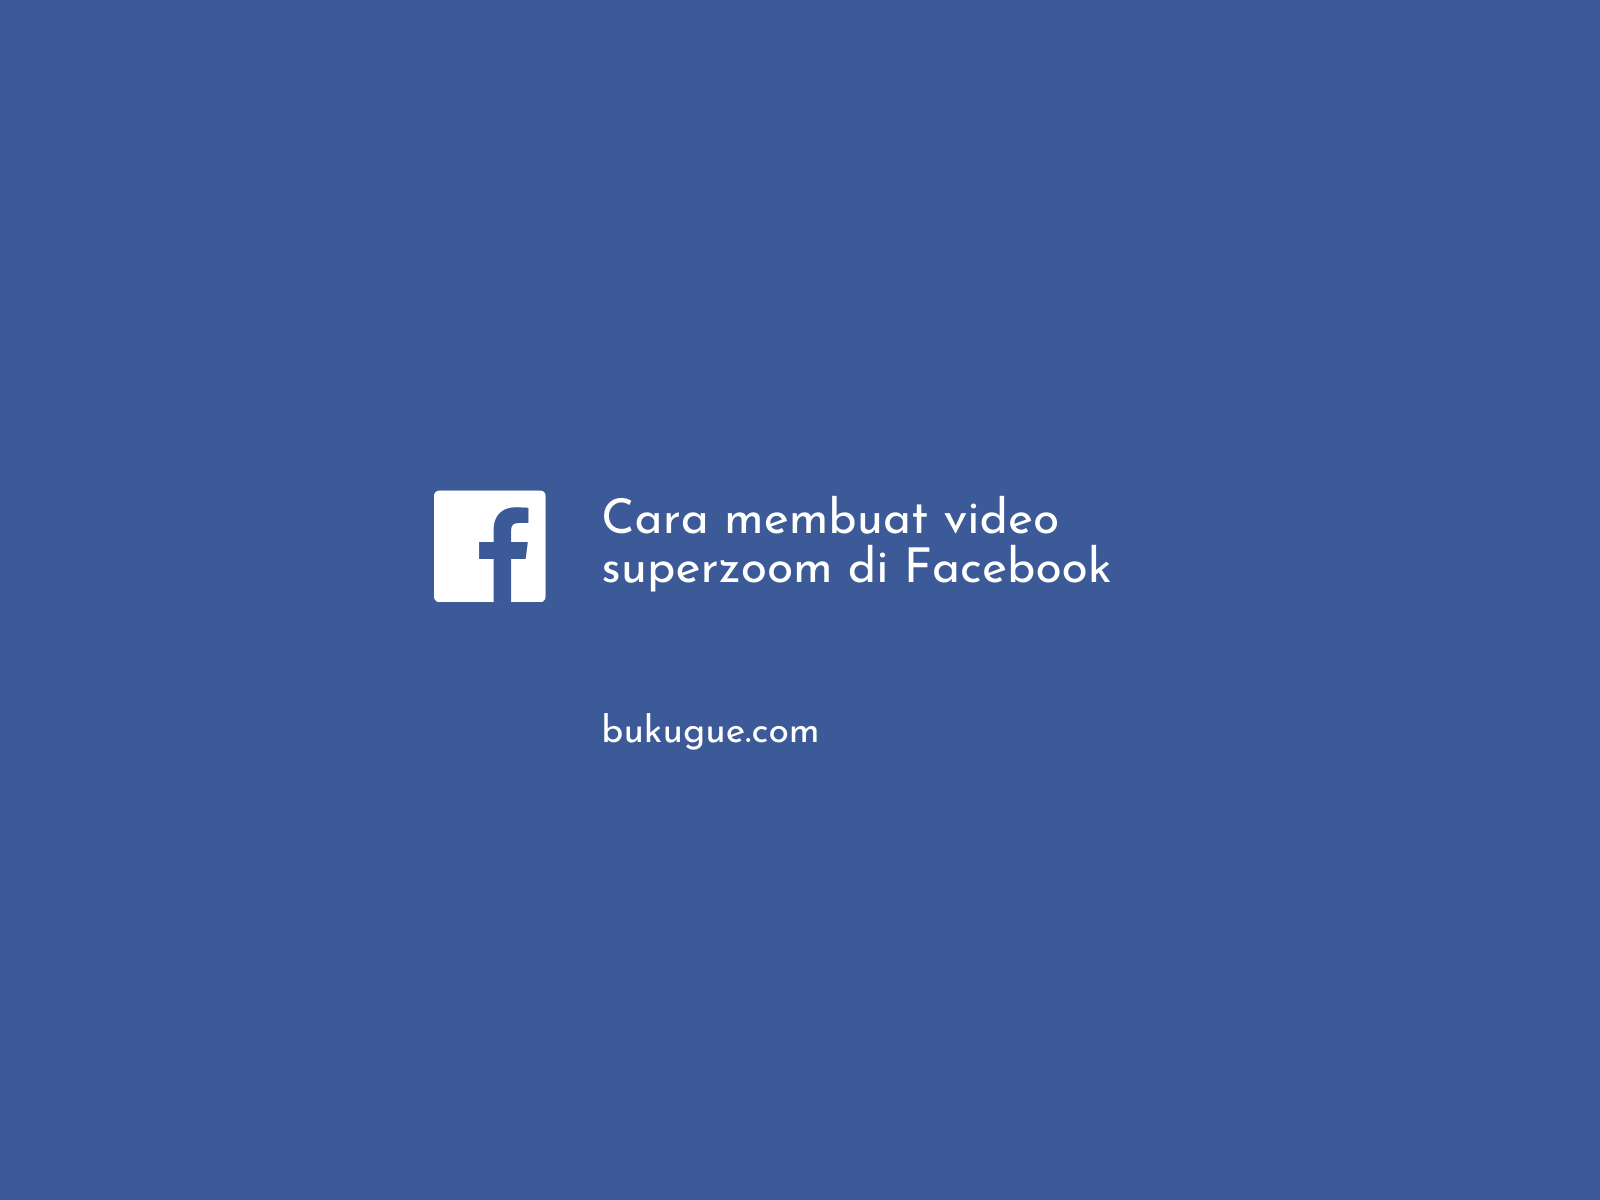 Cara membuat video superzoom di Facebook